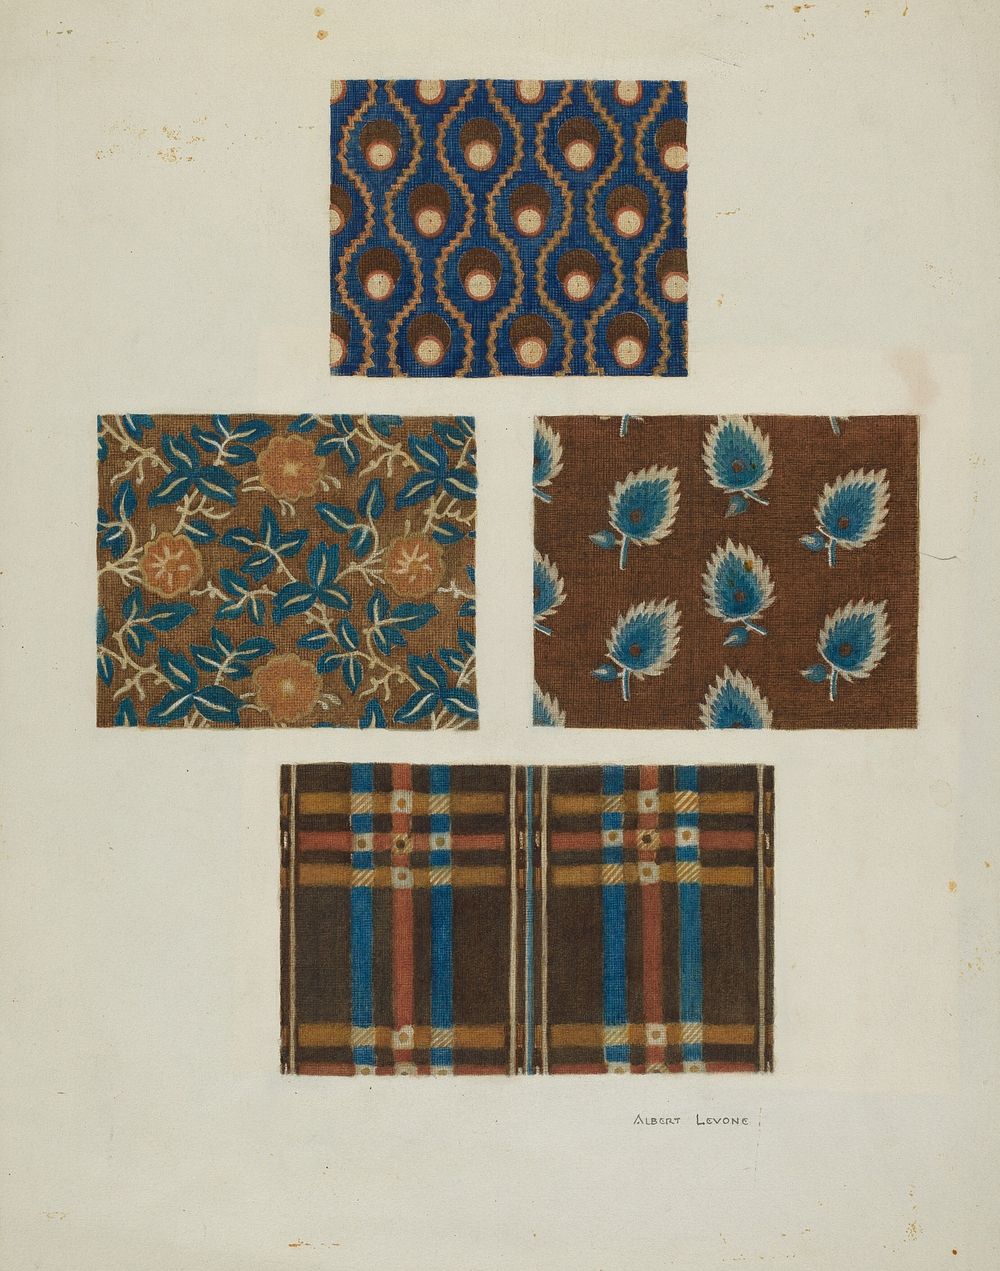 Cotton Prints (1935&ndash;1942) by Albert Levone.  